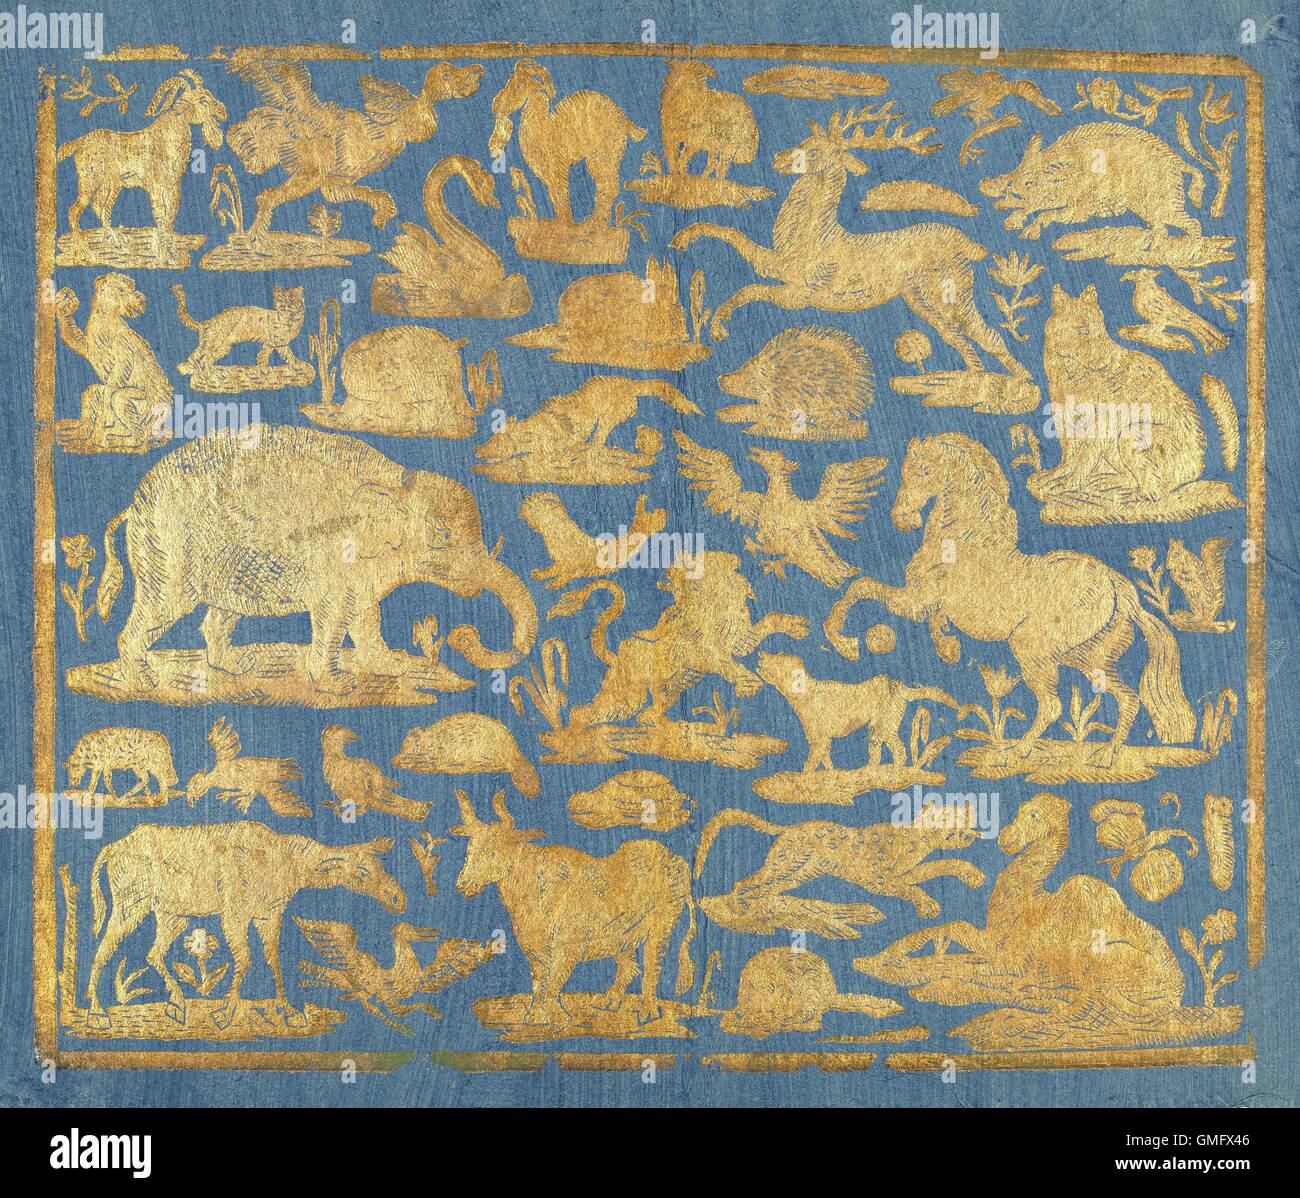 Papier de brocart bleu décoré d'animaux d'or, ch. 1750-1800. Comprend des feuilles et domestiqués mammifères et oiseaux sauvages (BSLOC 2016 2 147) Banque D'Images